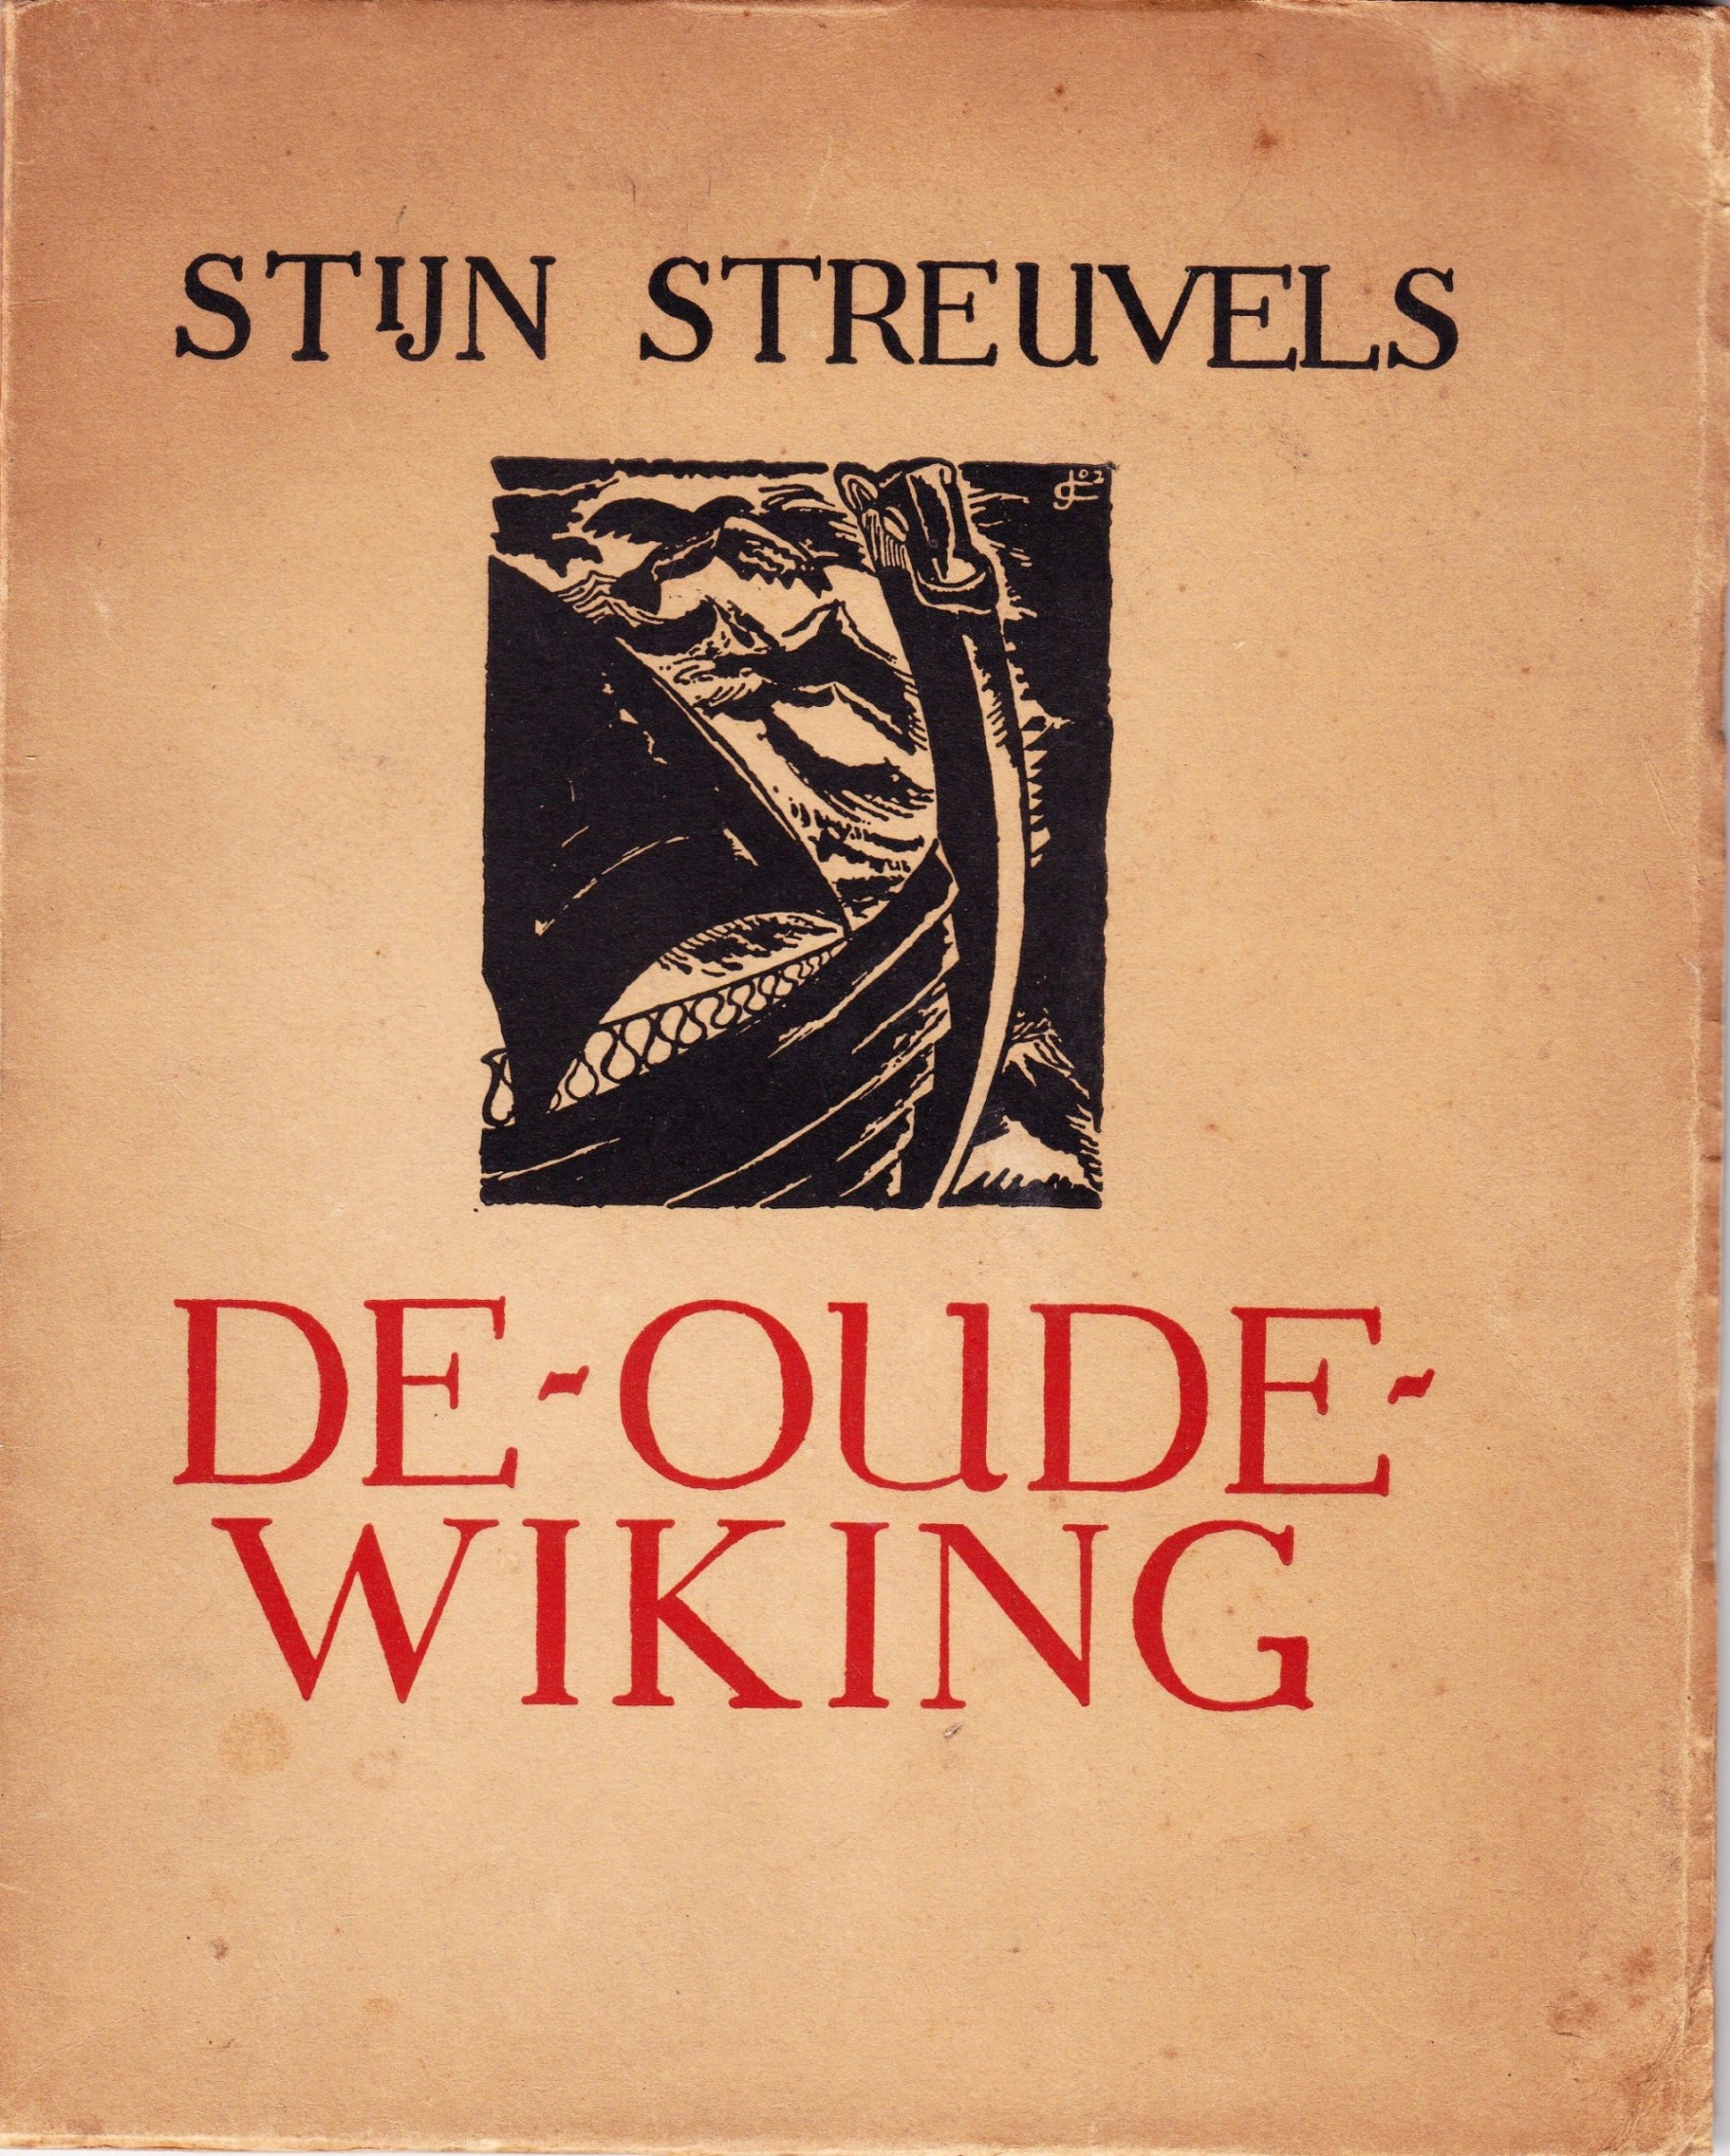 De Oude Wiking (Stijn Streuvels, 1931)